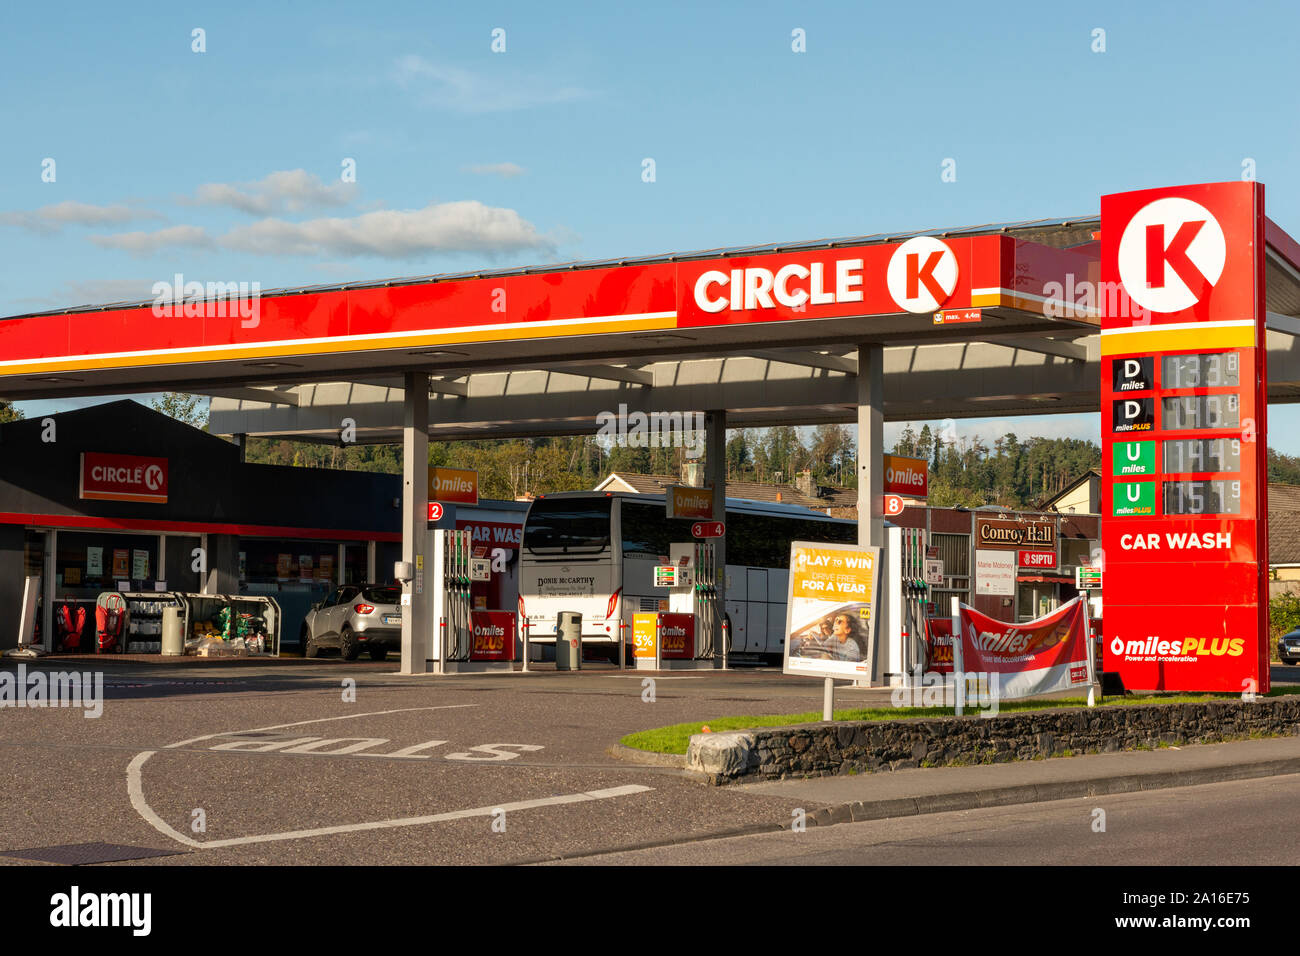 Circule la gasolinera K en Park Road en Killarney, Irlanda, como una de las estaciones de servicio de alto perfil o gasolinera o gasolinera de la zona. Foto de stock